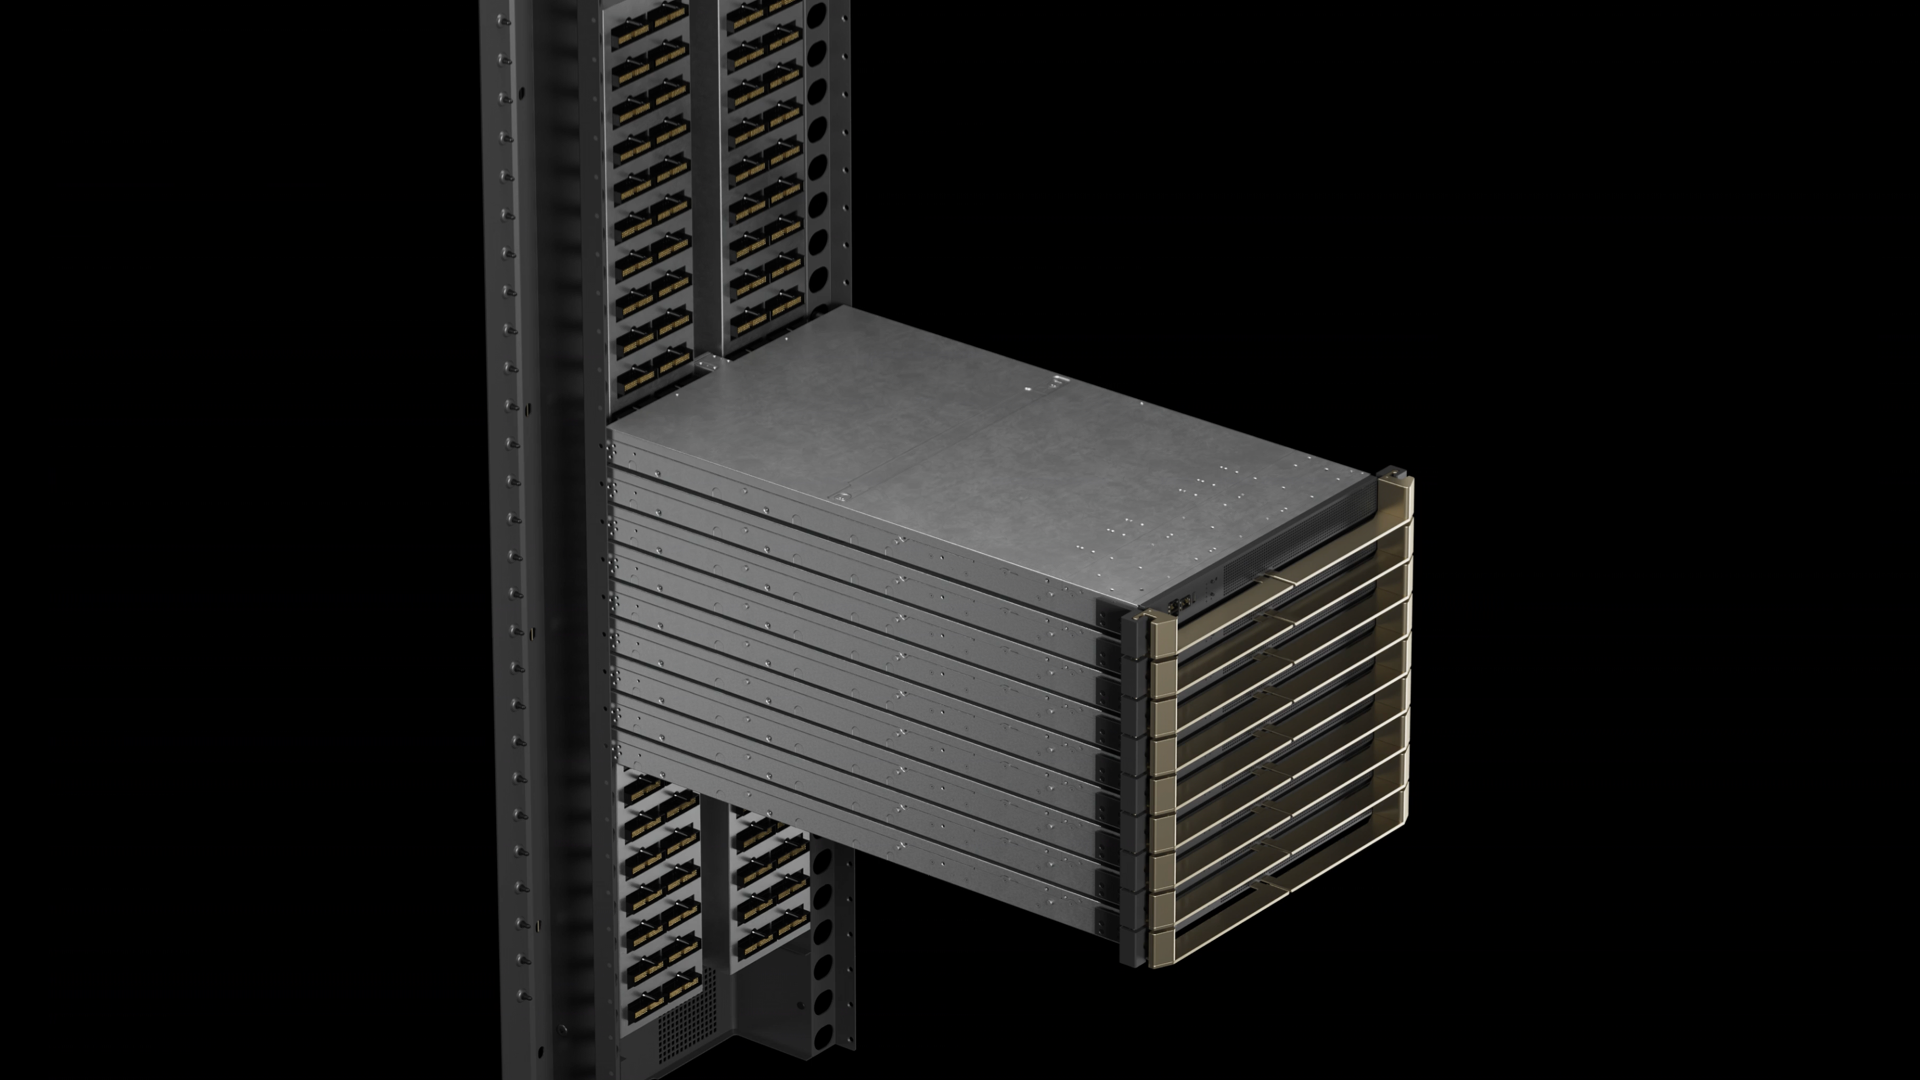 130 TB/s toplam NVLink bant genişliği sağlayan 9 NVLink Anahtar Tepsisi ve bir kablo kartuşuyla birlikte bir GB200 NVL72 anahtar sistemi gösterilmektedir.